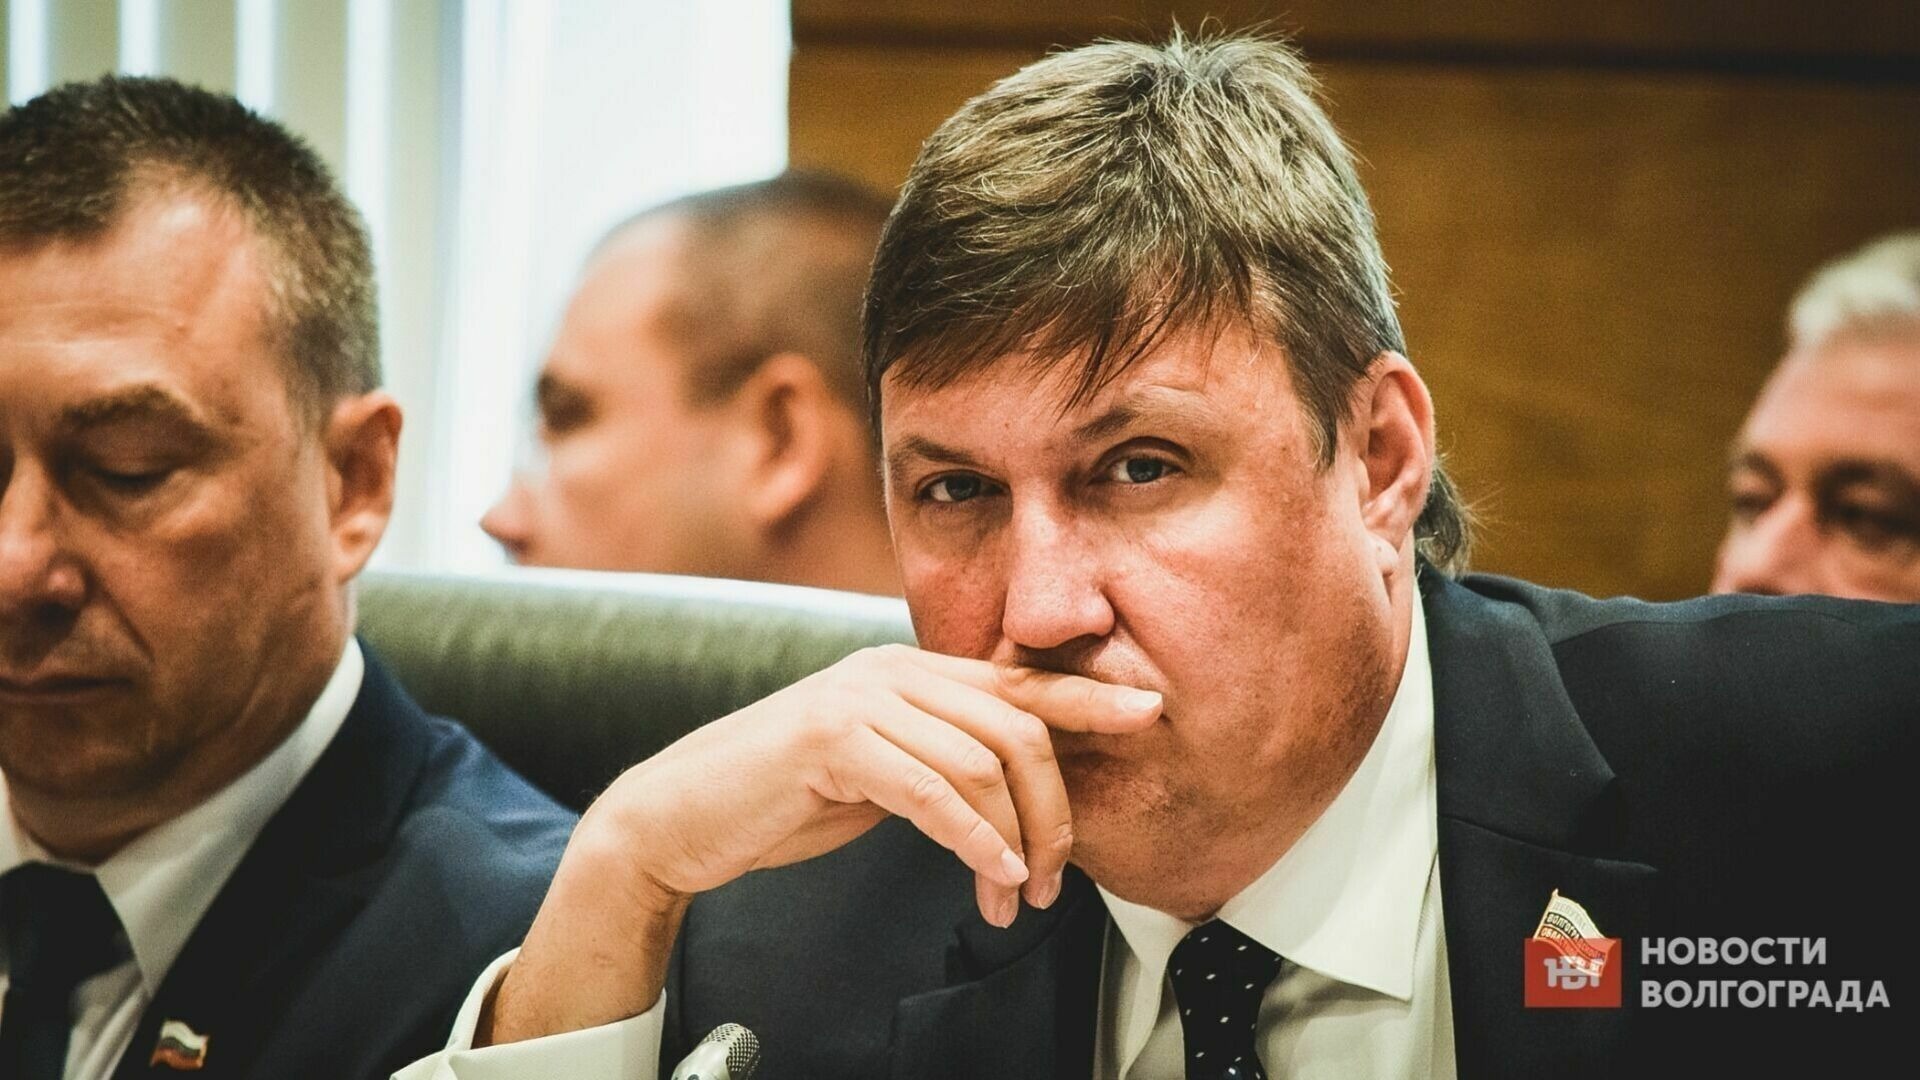 Депутат Александр Осипов воспринимает прилёт беспилотника как тревожный звонок